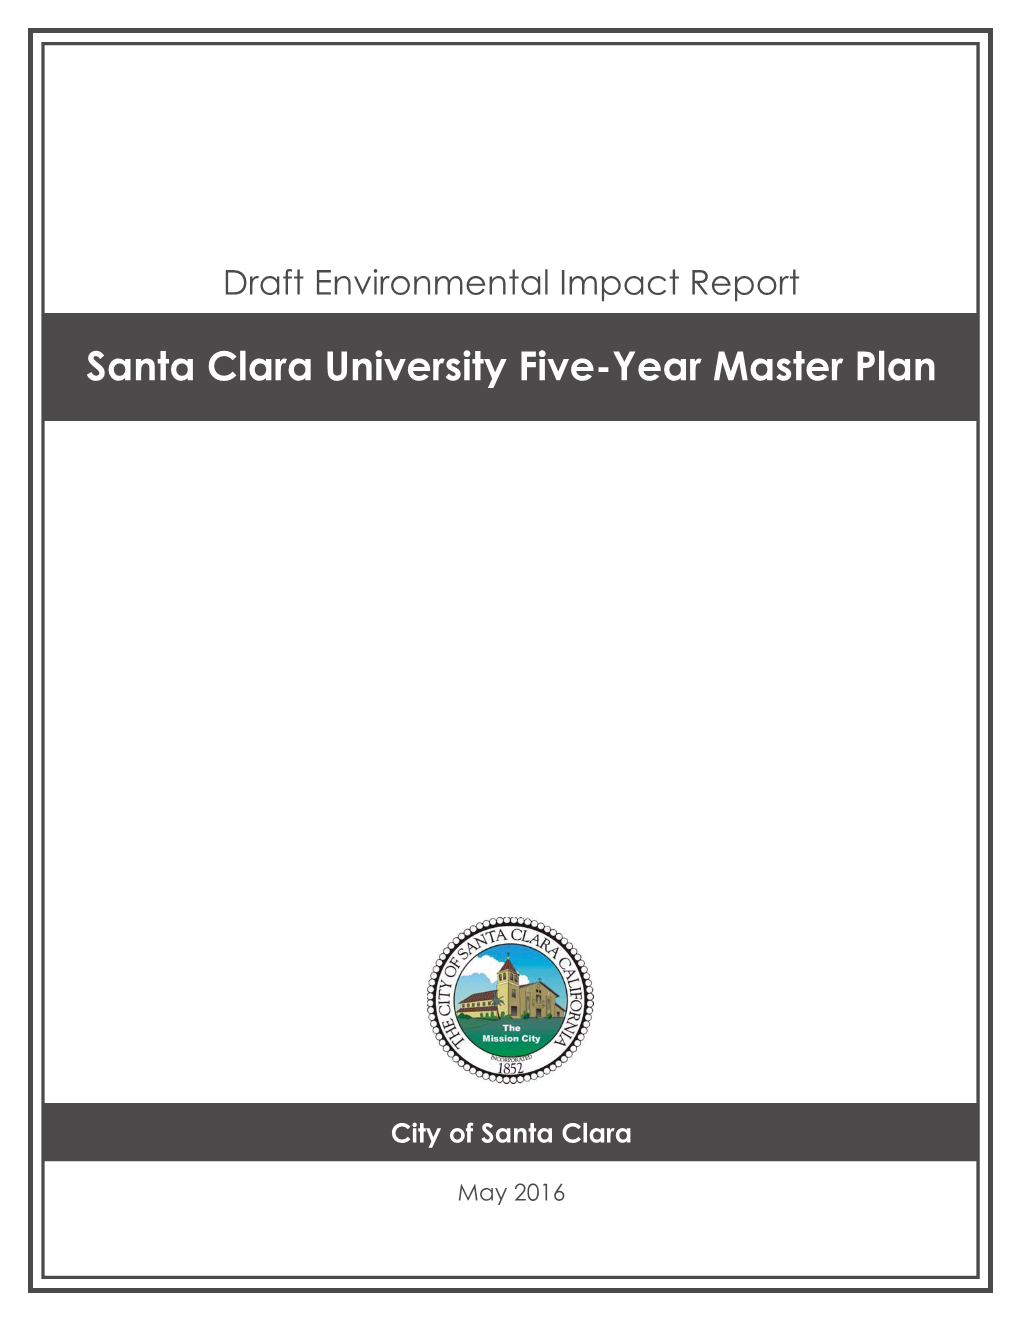 Santa Clara University Five-Year Master Plan I Draft EIR City of Santa Clara May 2016 TABLE of CONTENTS